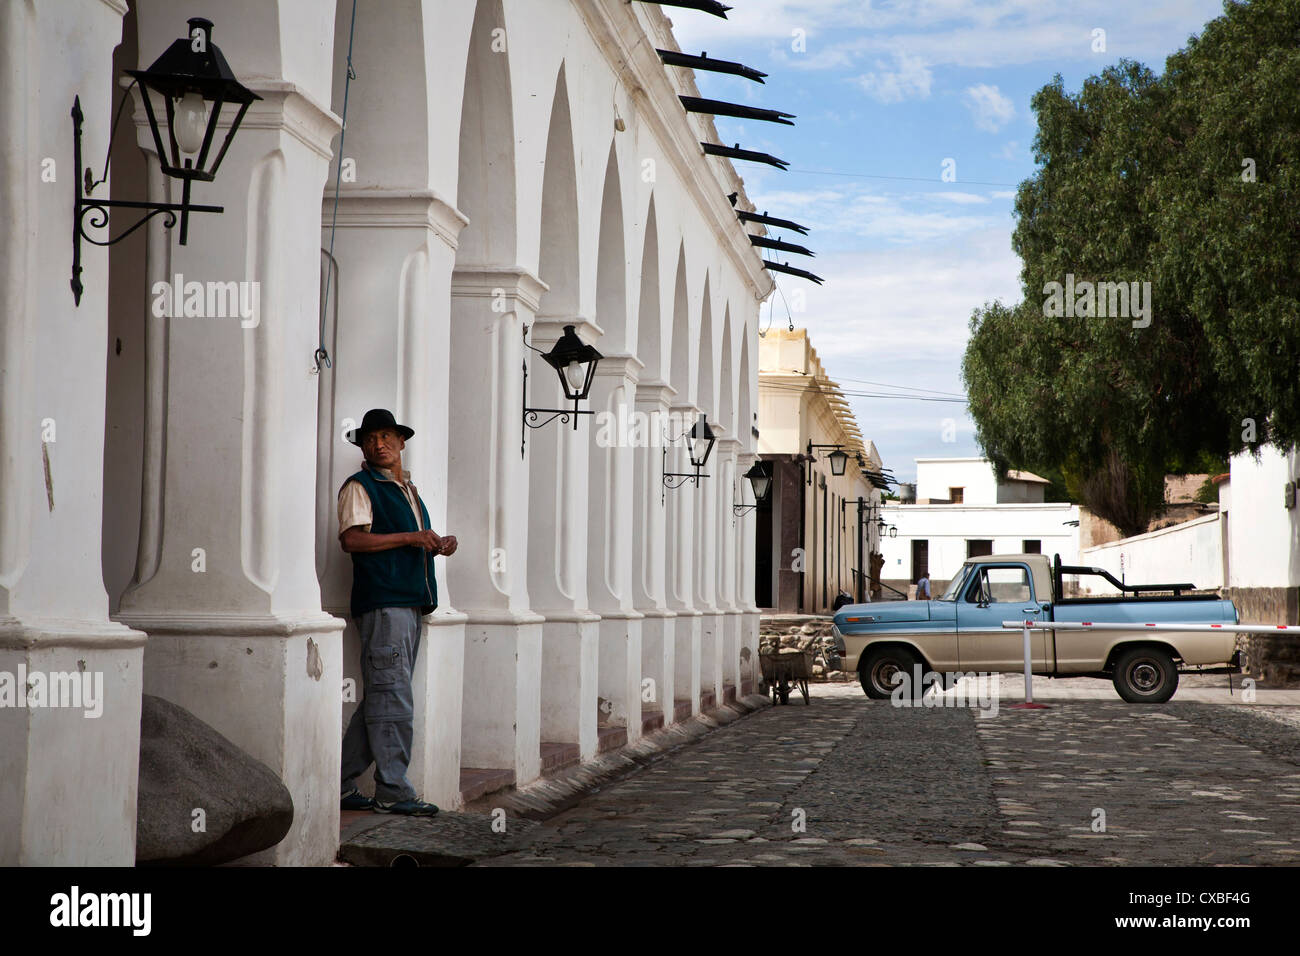 The main square (Plaza 9 de Julio) in Cachi, Salta Province, Argentina. Stock Photo